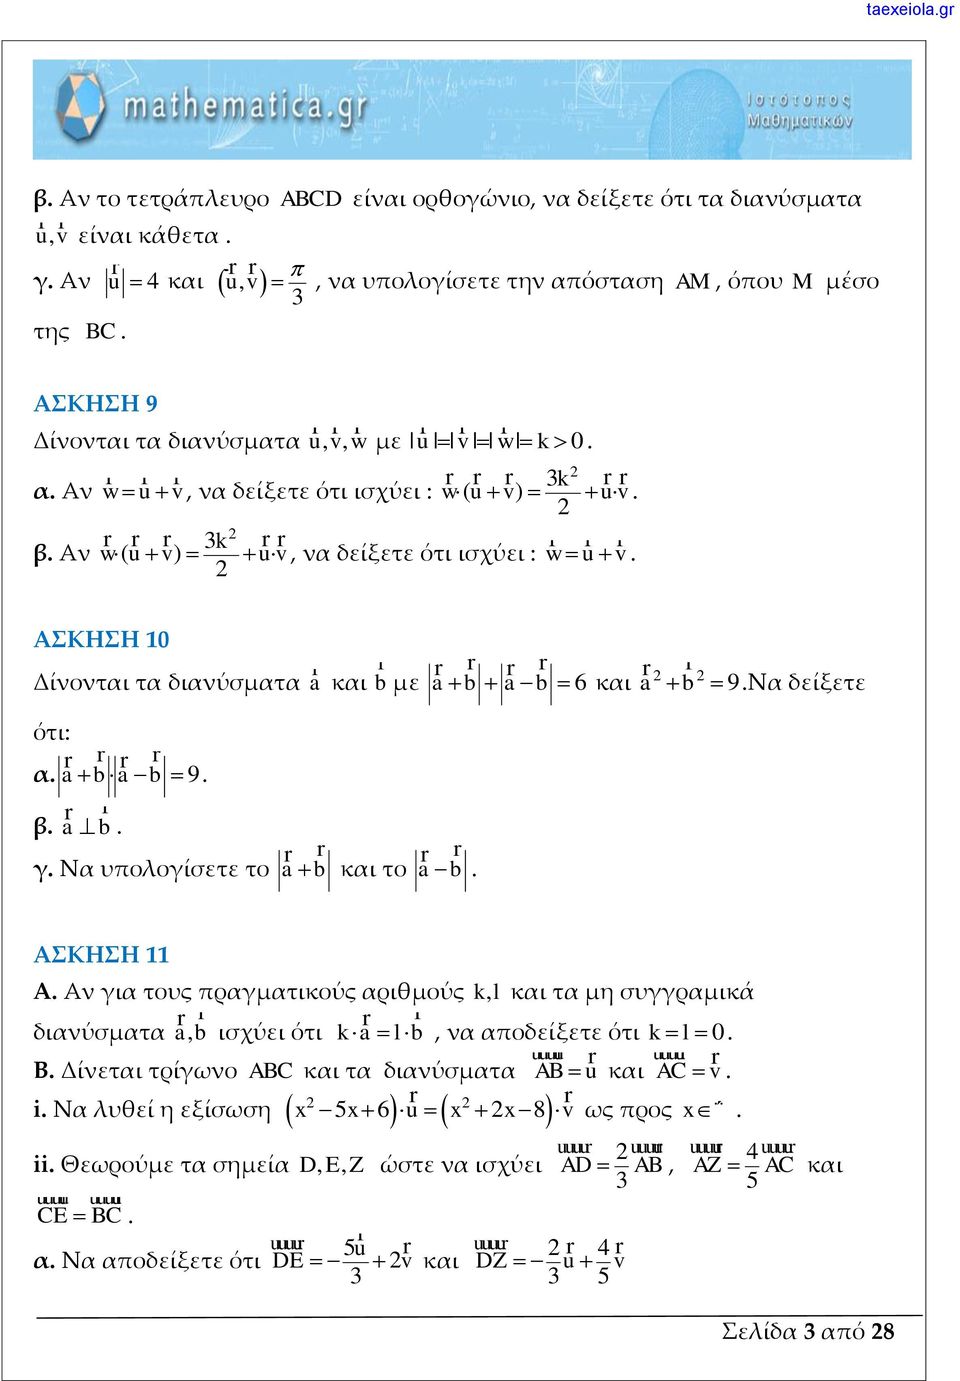 9Να δείξετε ότι: α a b a b 9 β a b γ Να υπολογίσετε το ab και το ab ΑΣΚΗΣΗ 11 A Αν για τους πραγματικούς αριθμούς kl, και τα μη συγγραμικά διανύσματα ab, ισχύει ότι k a l b, να αποδείξετε ότι kl 0